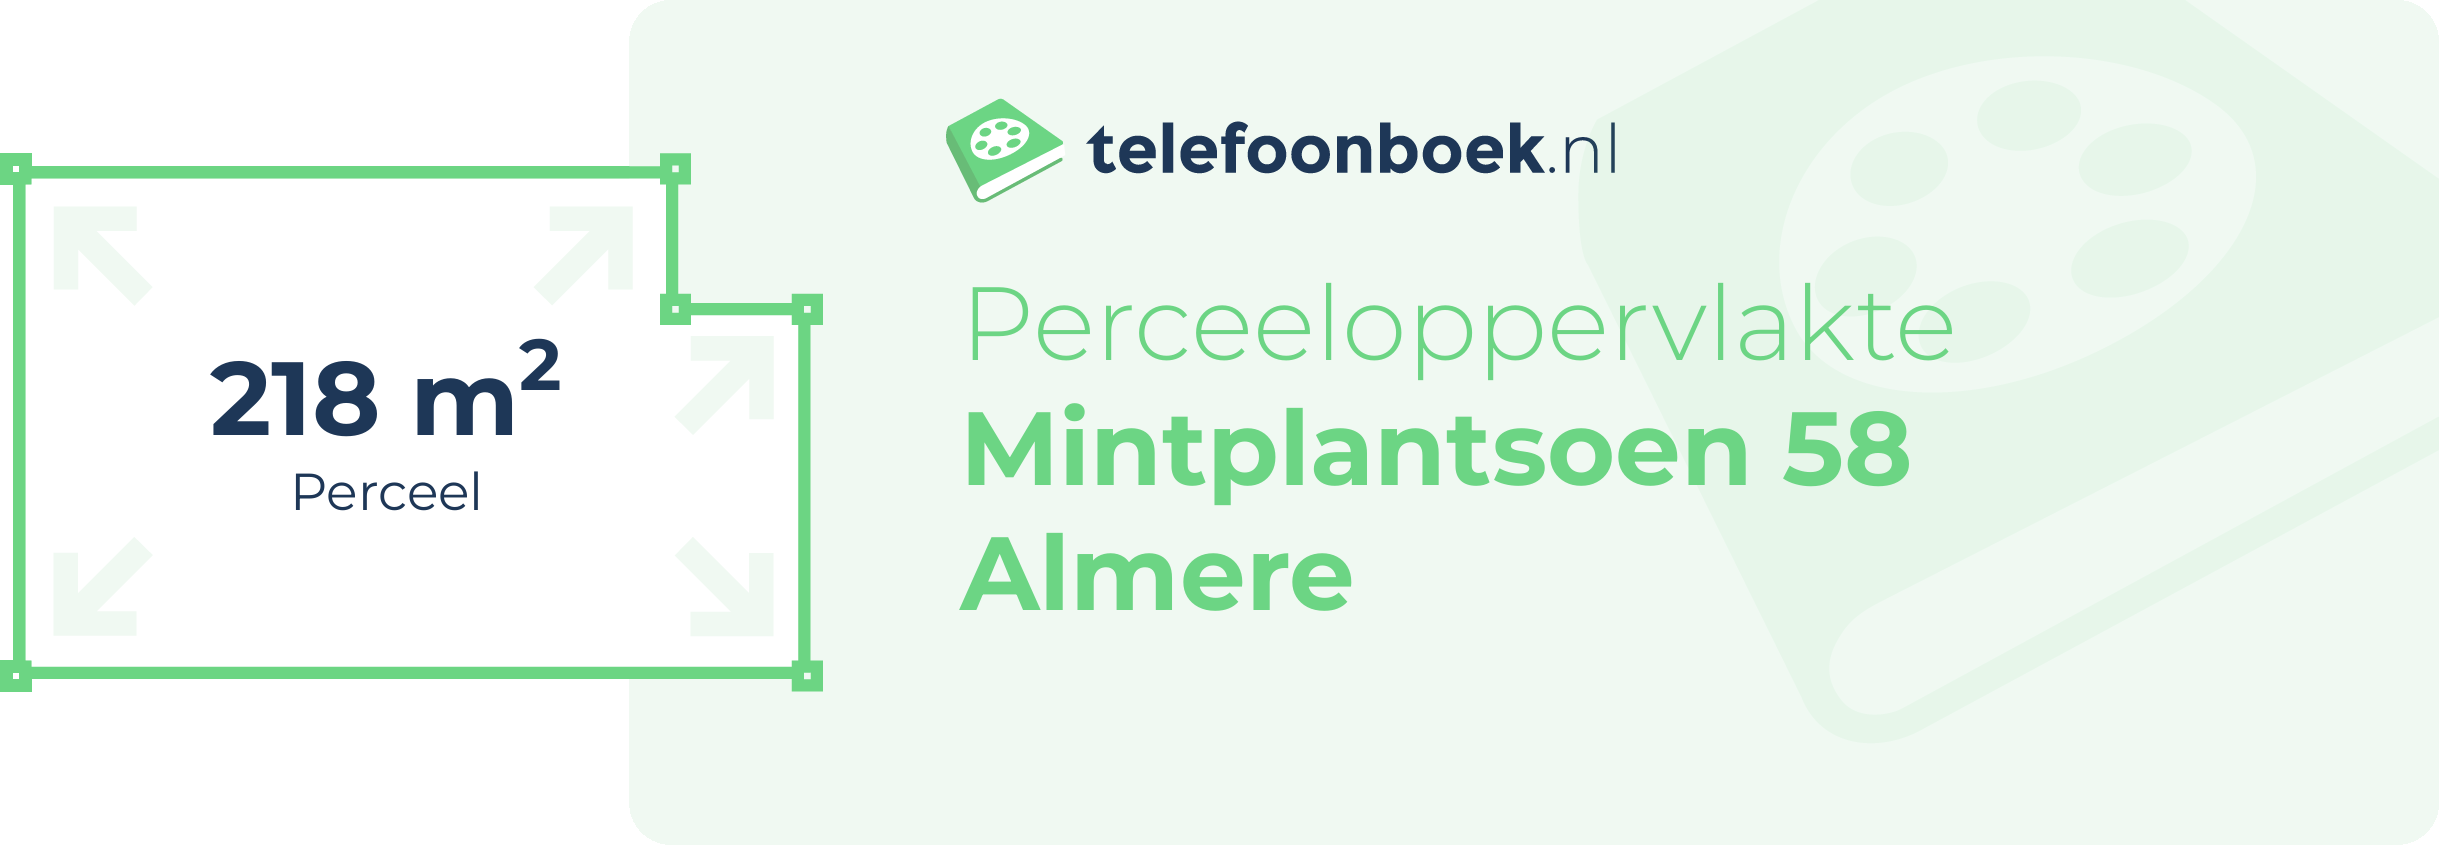 Perceeloppervlakte Mintplantsoen 58 Almere